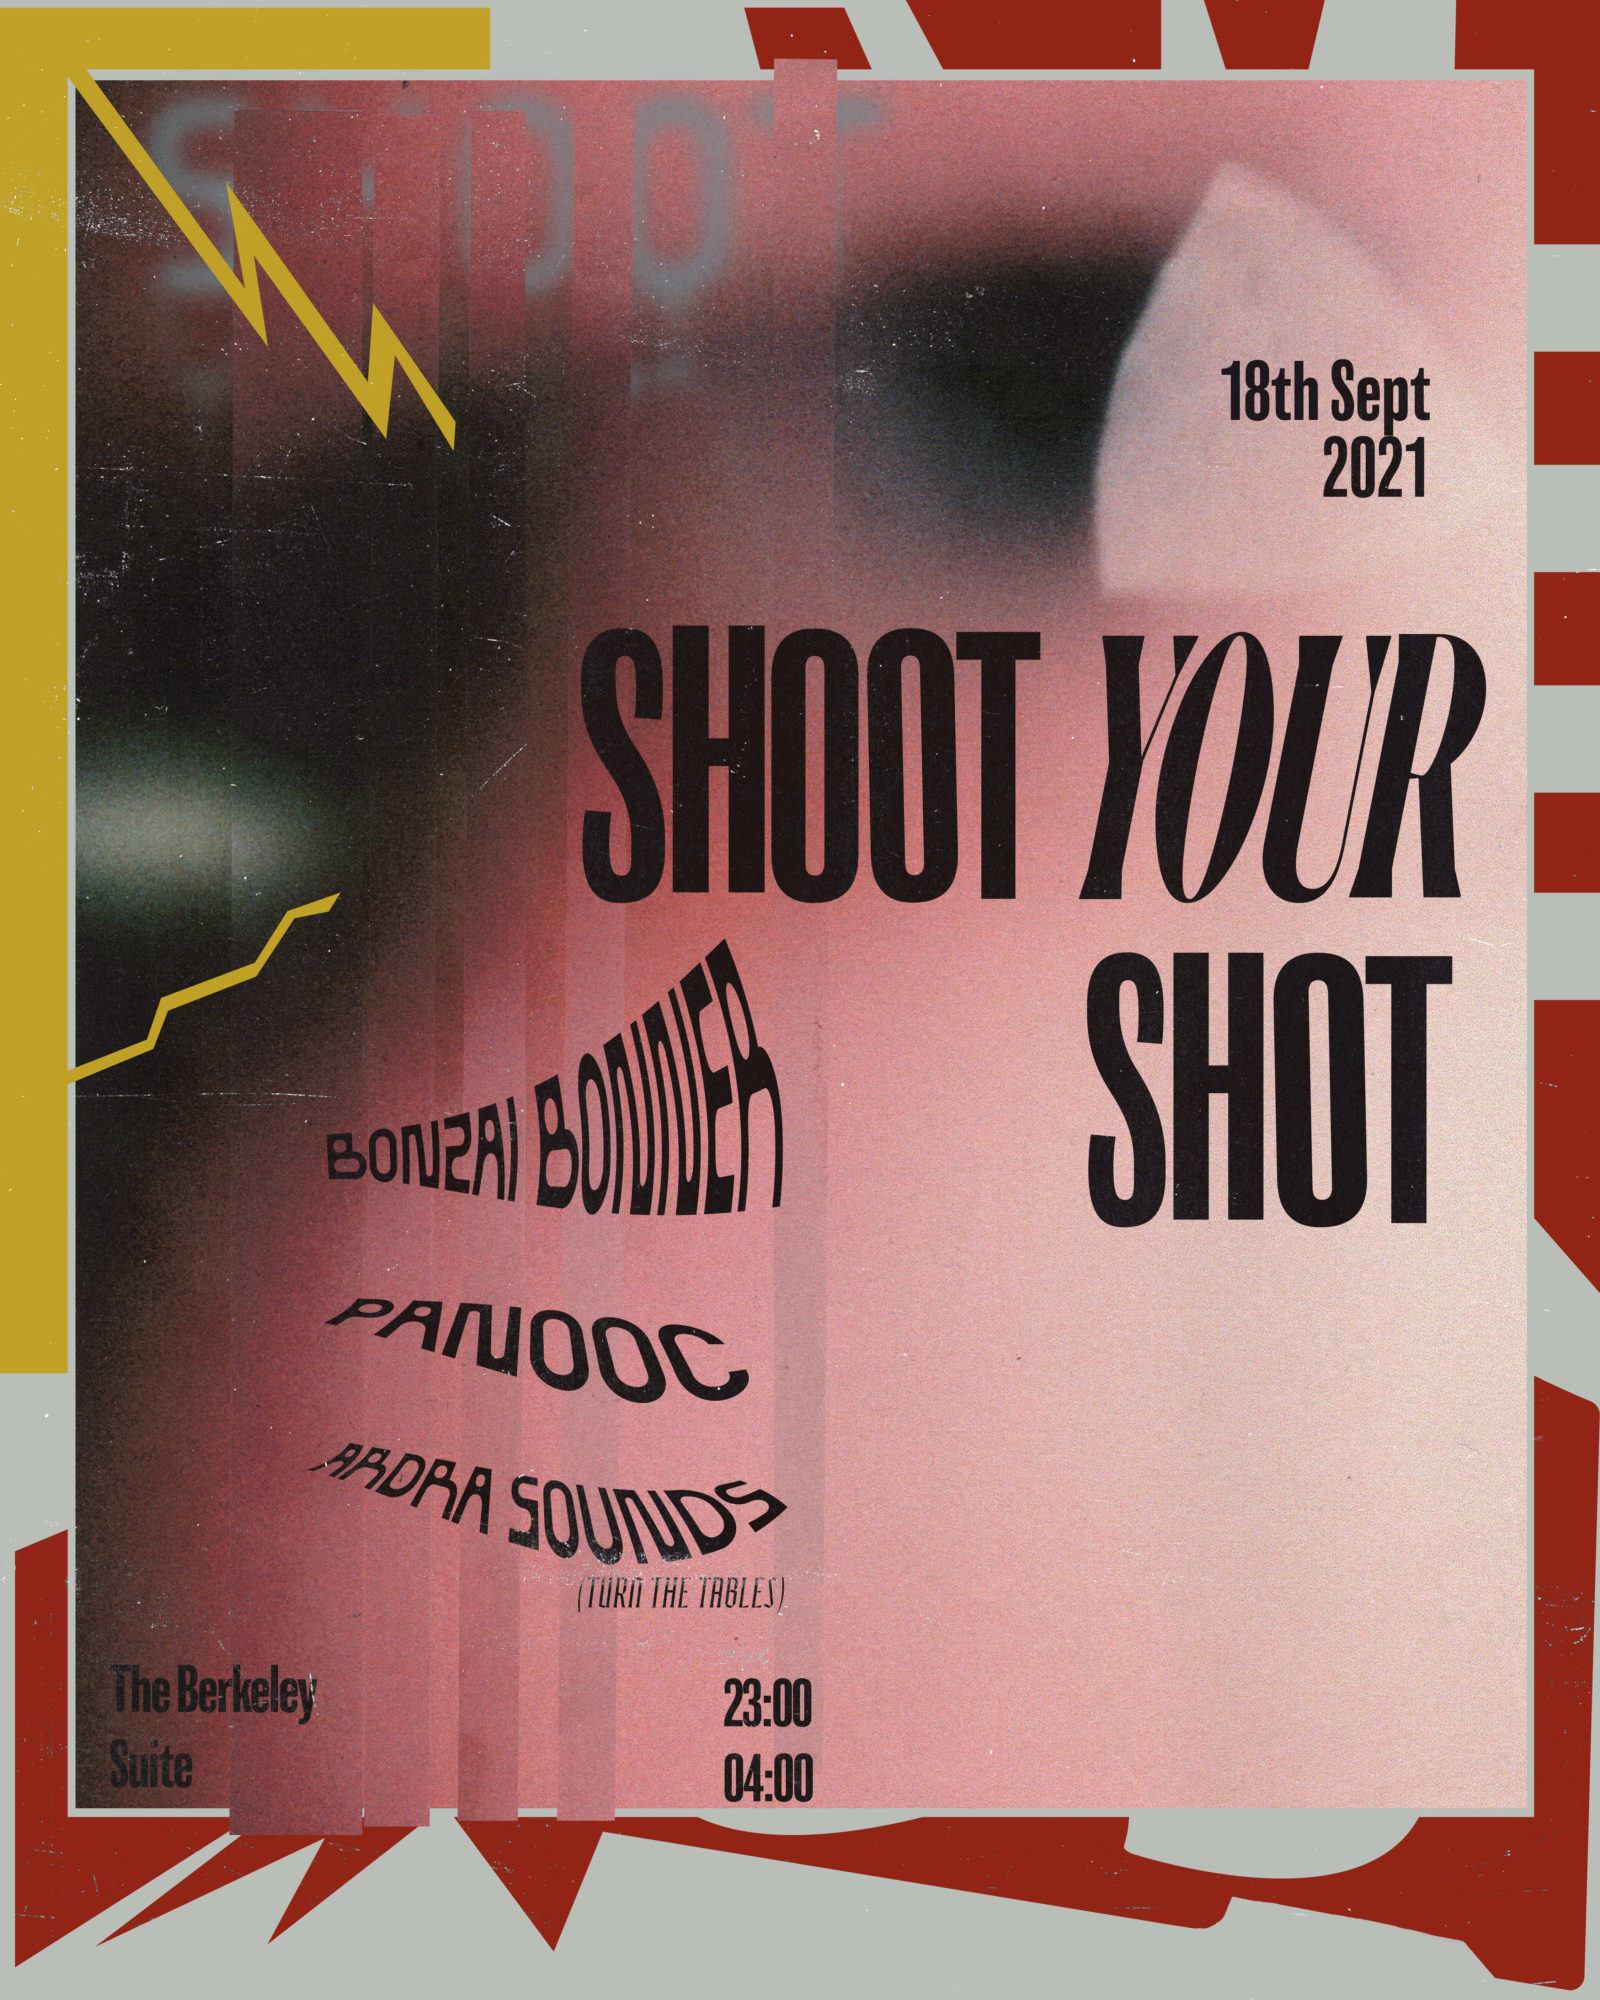 Shoot Your Shot